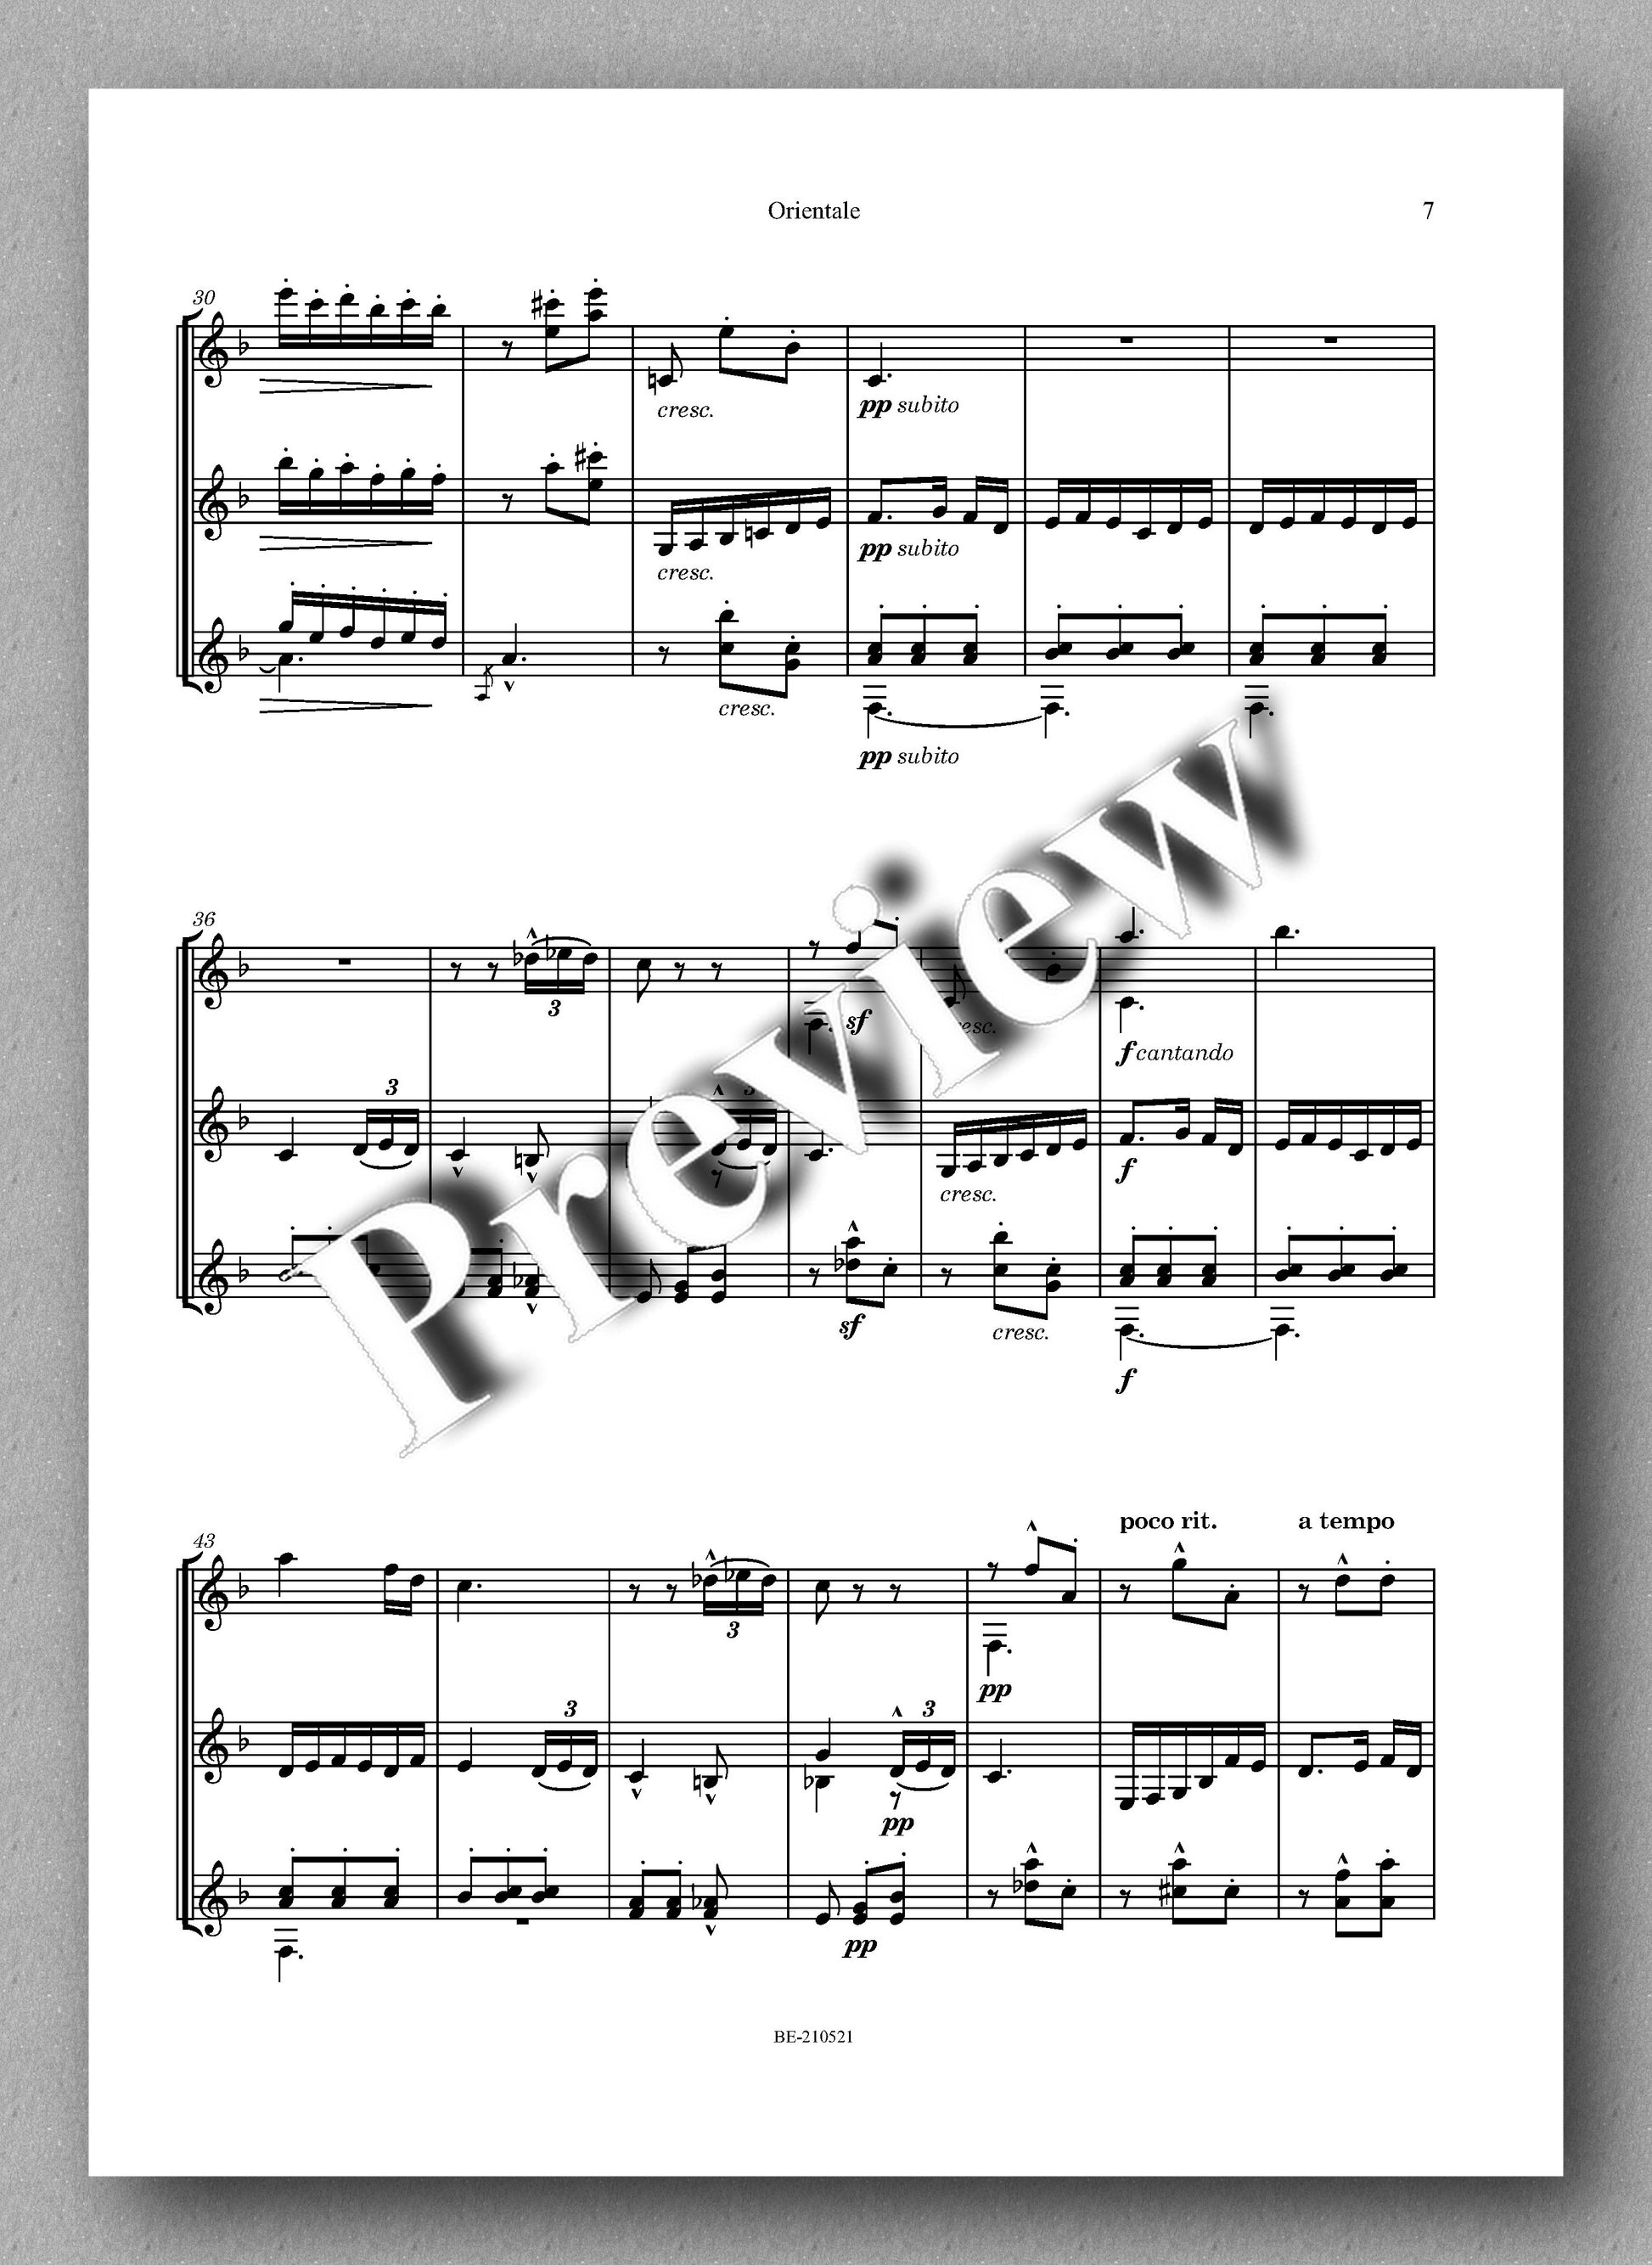 Albéniz-Burley, Orientale - music score 3